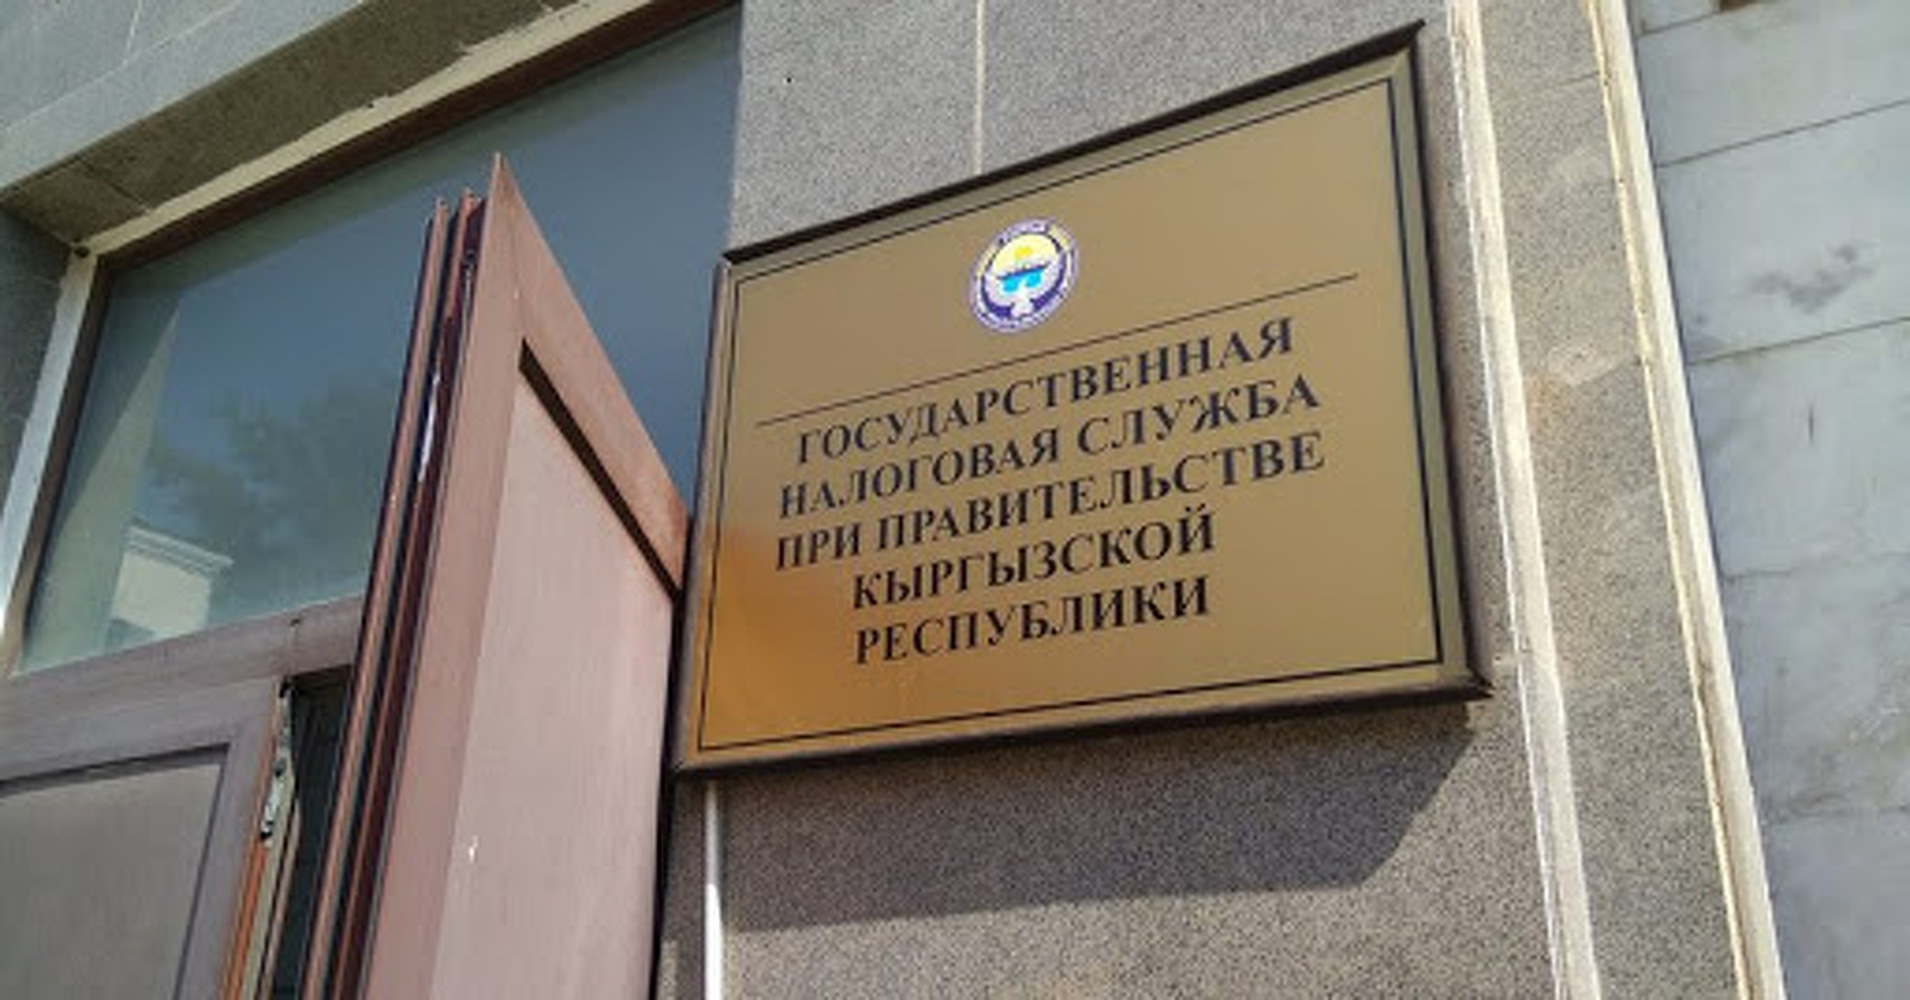 Количество и сумма выданных патентов в разрезе районов Бишкека - список — Today.kg